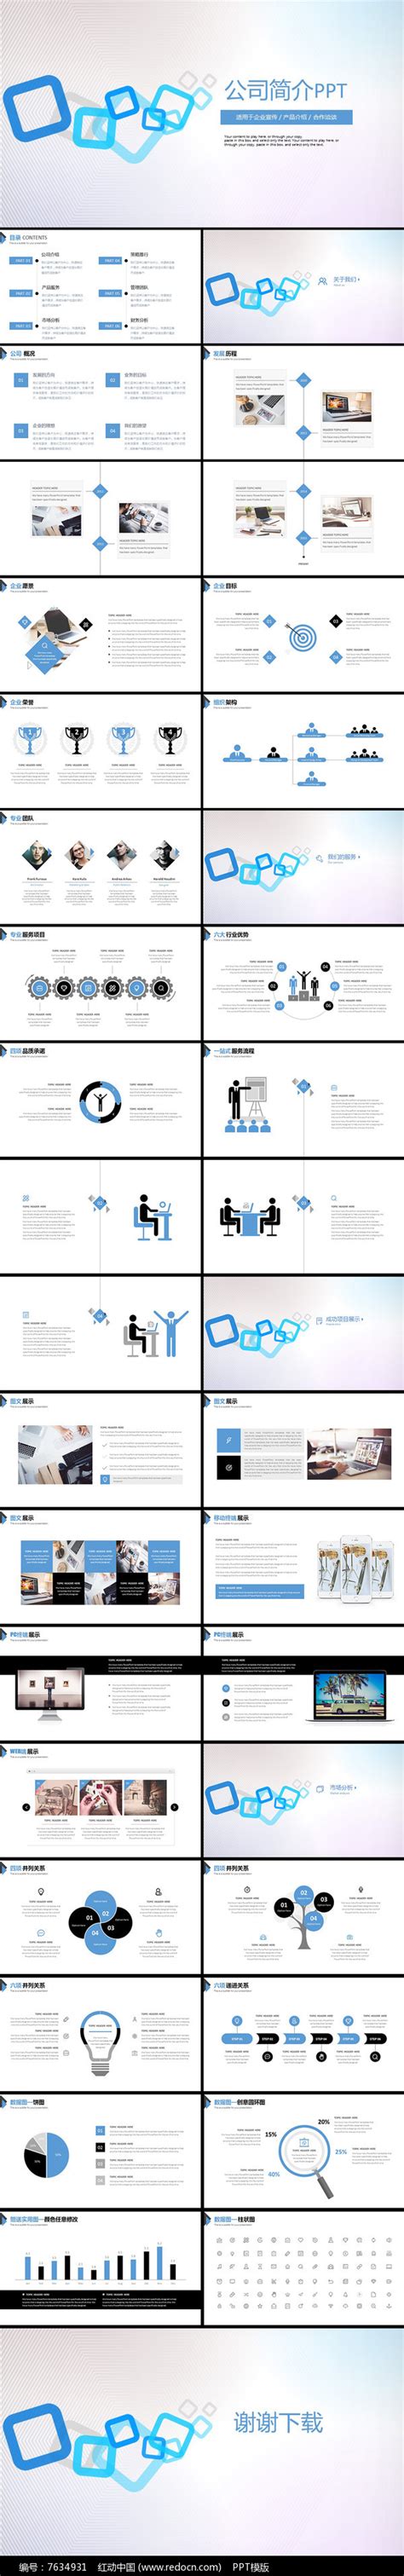 公司介绍html5 模板,公司介绍PPT怎么做